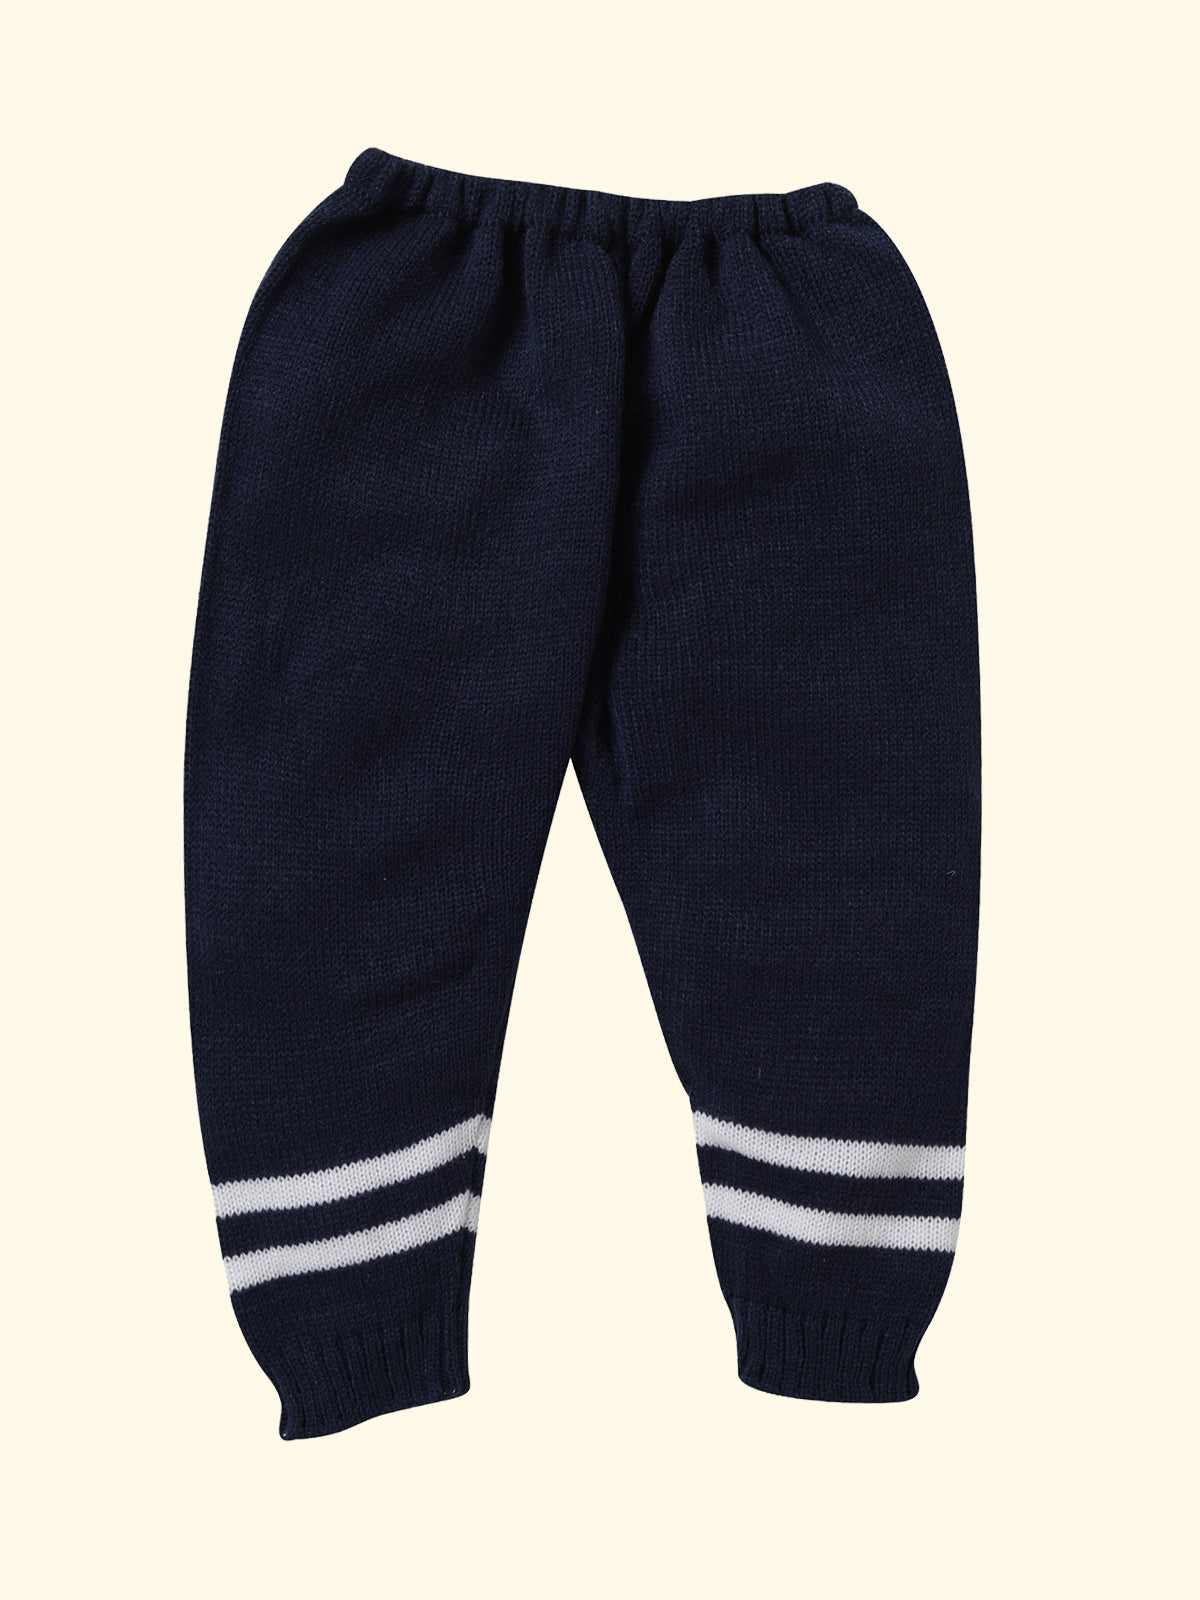 Stripe Pant Navy Color for Infants